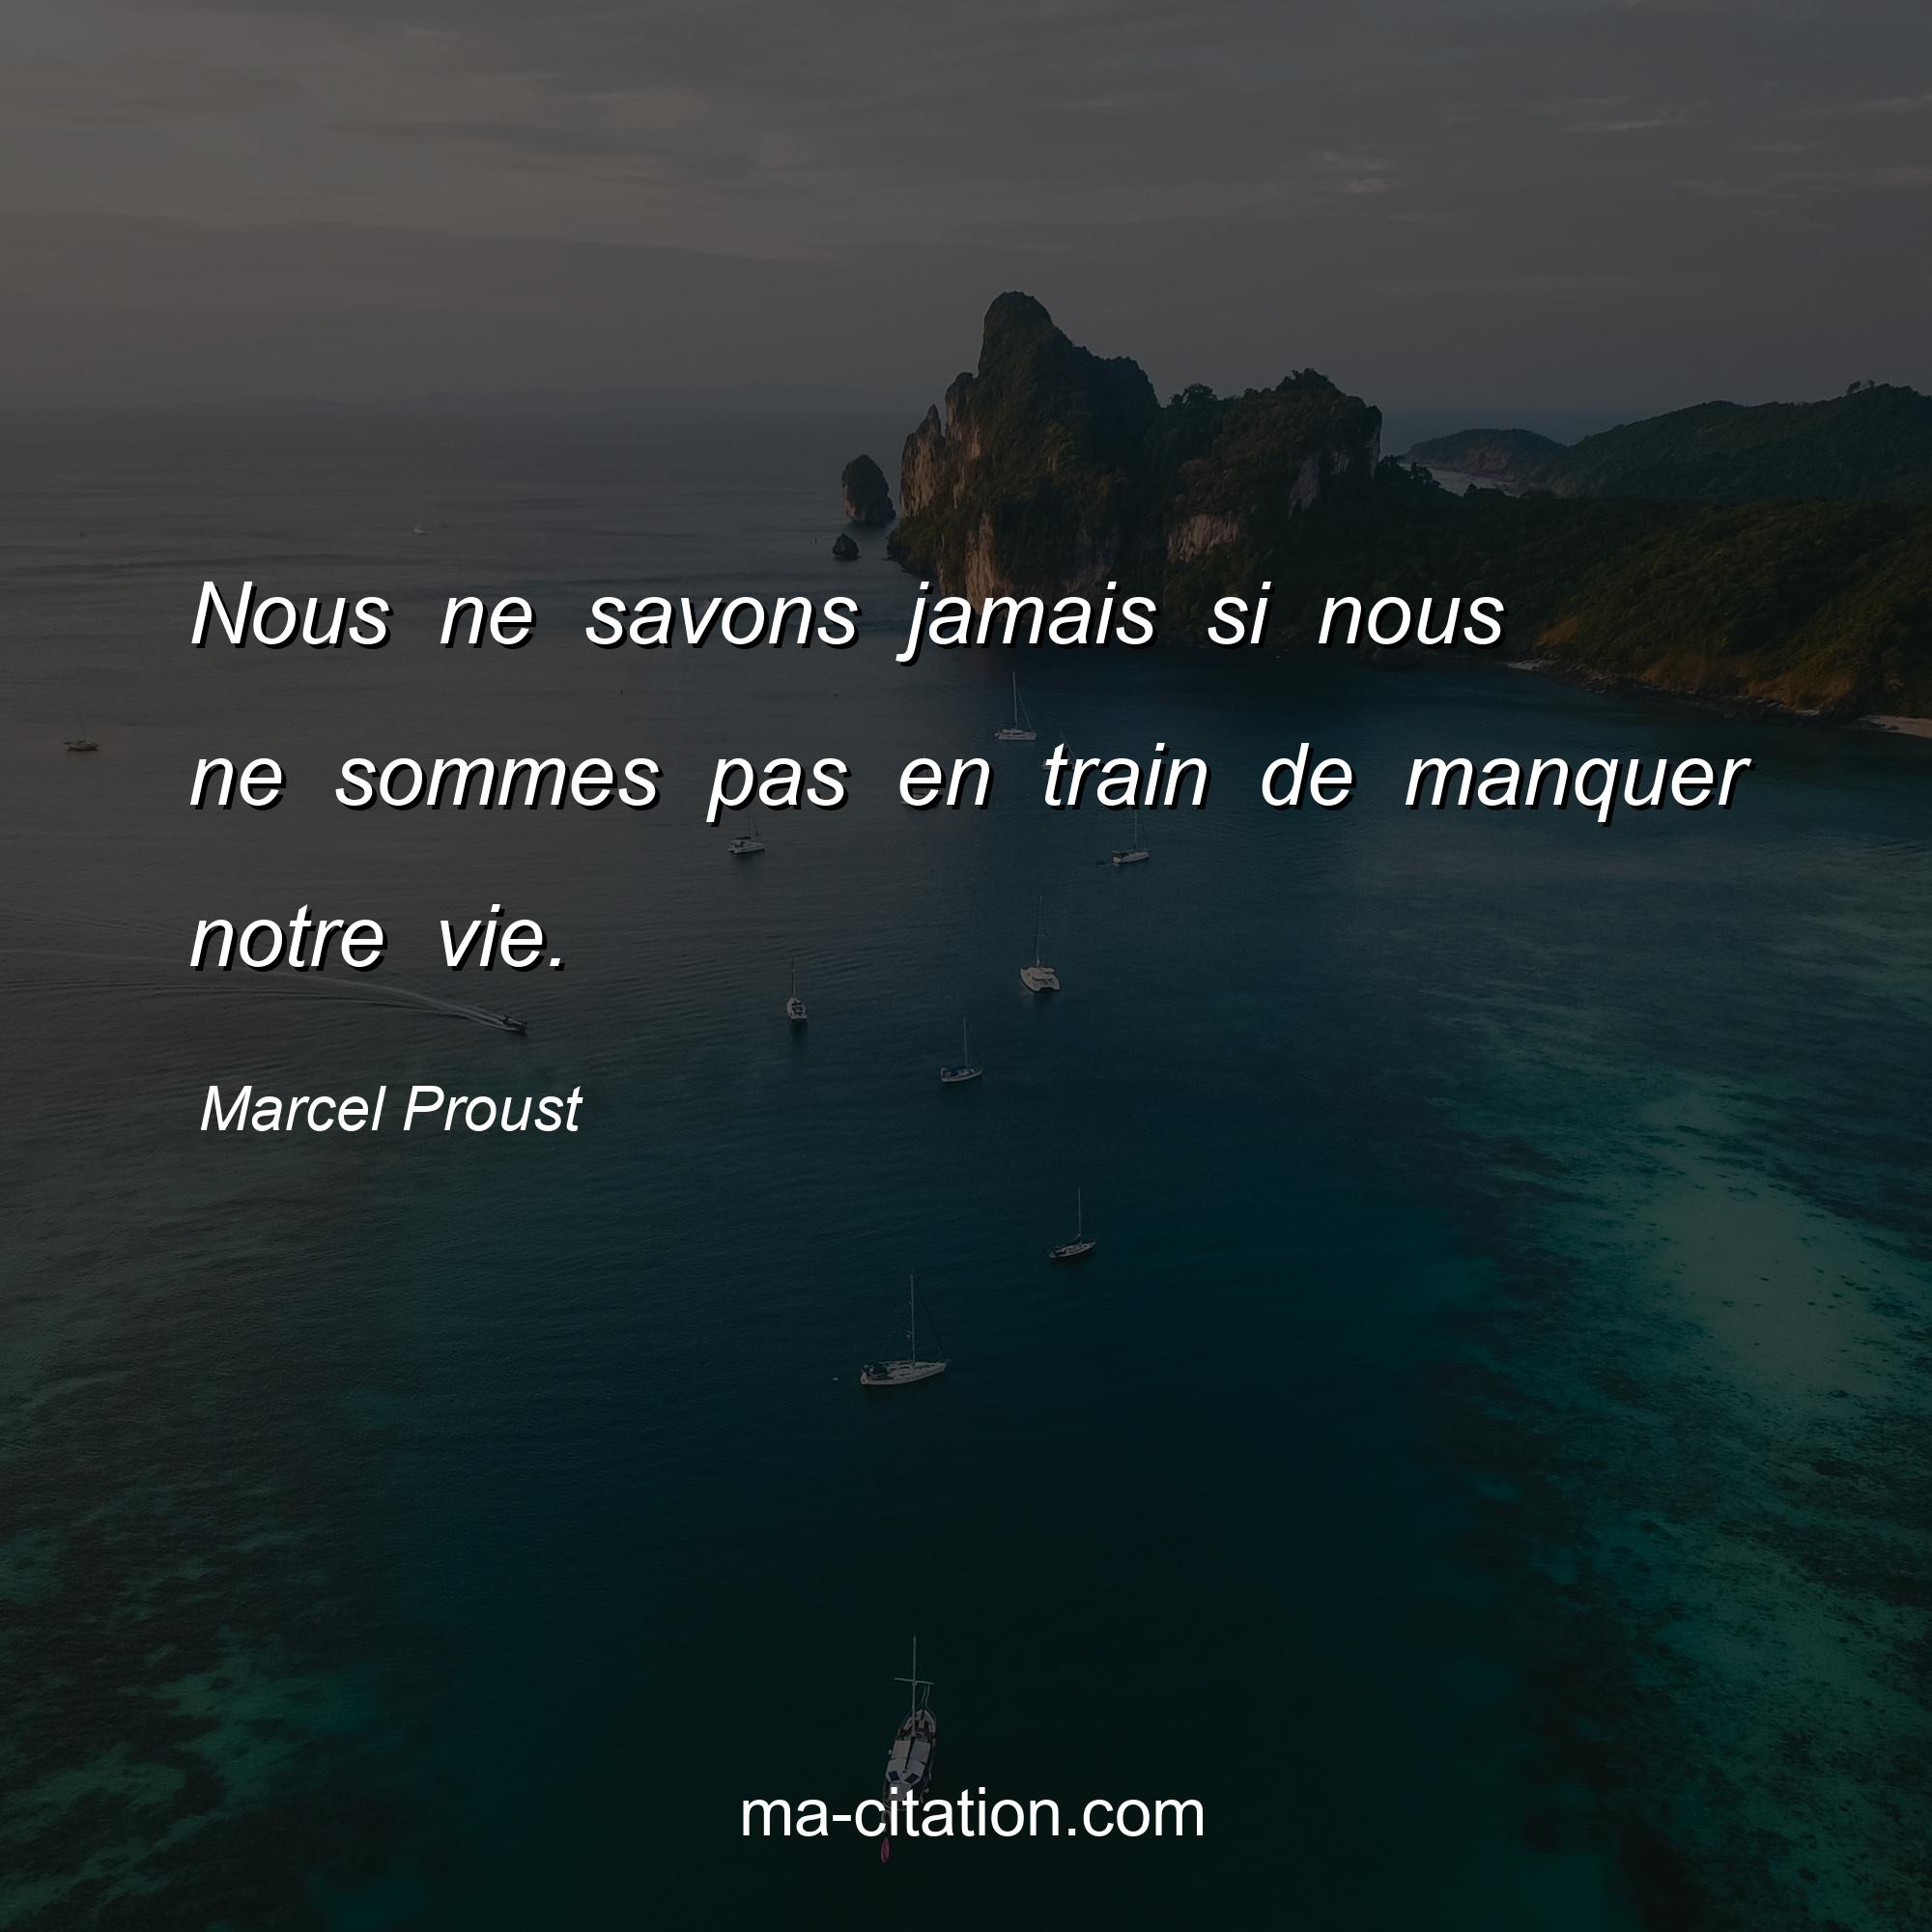 Marcel Proust : Nous ne savons jamais si nous ne sommes pas en train de manquer notre vie.